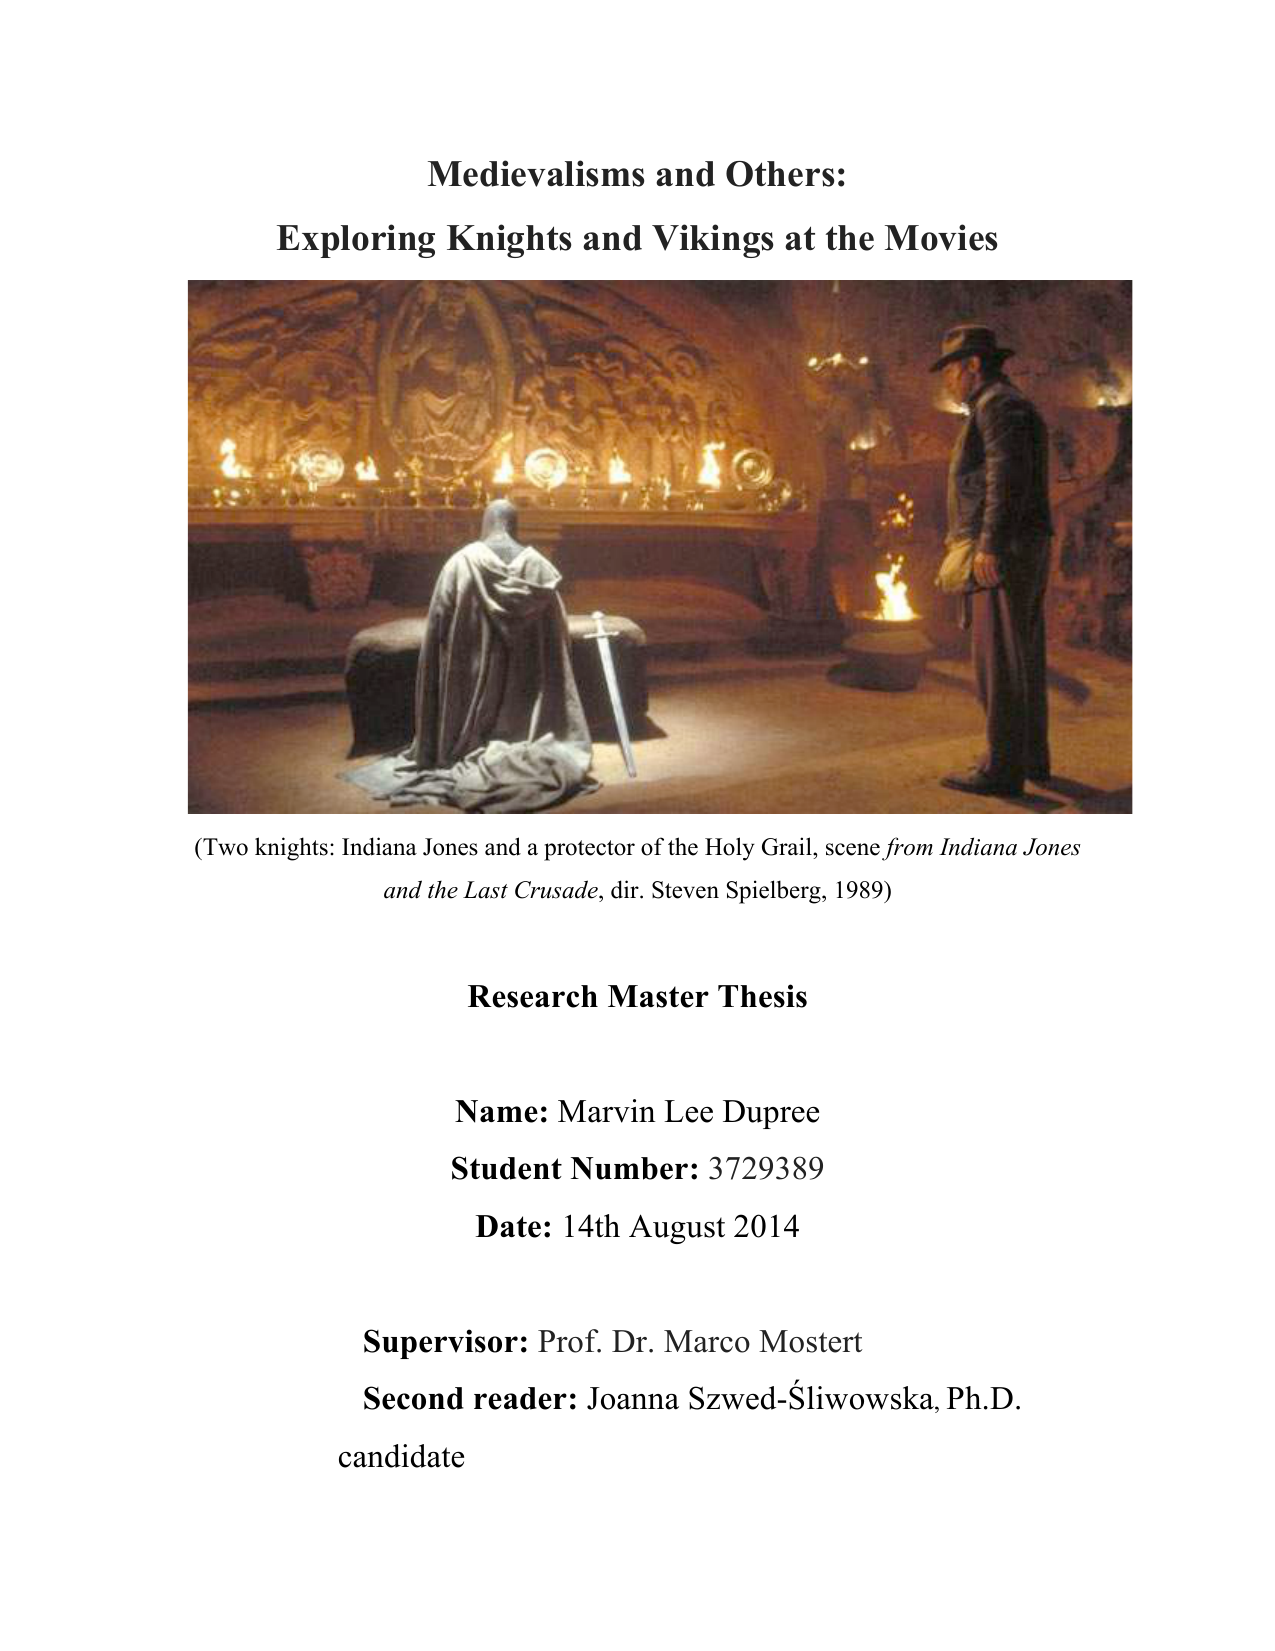 Exploring Knights And Vikings At The Movies